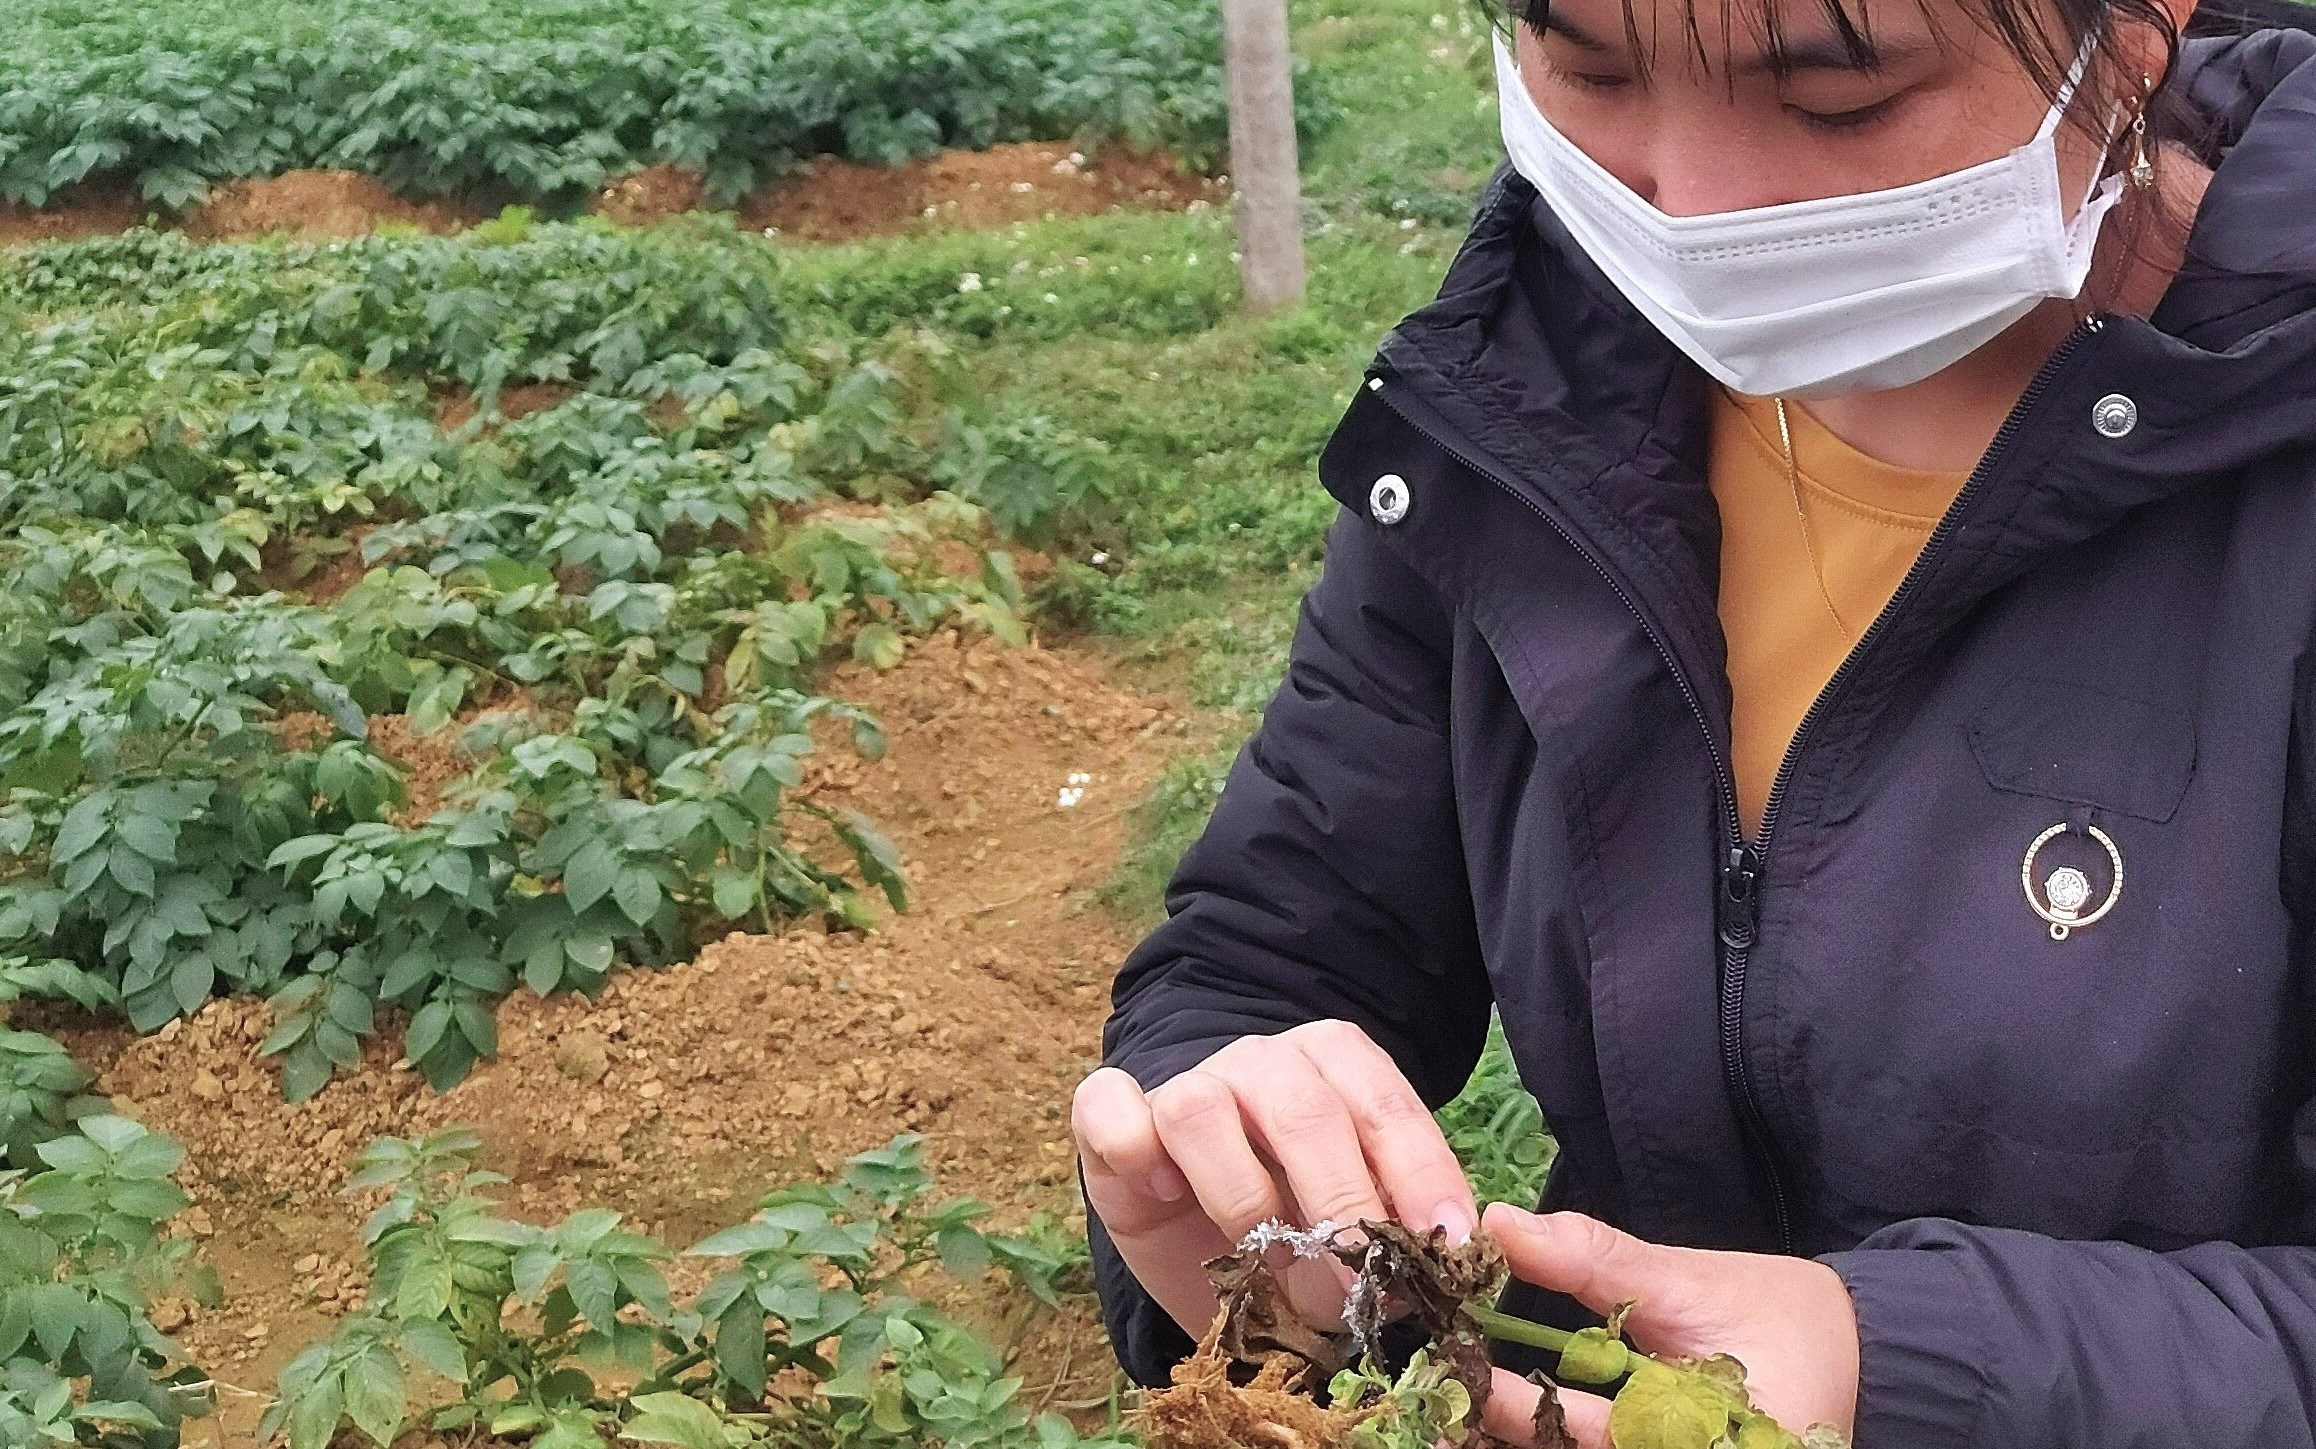 Bà Chu Thị Mai, Cán bộ Nông nghiệp xã Diễn Phong, kiếm tra Bệnh sương mại trên khoai tây 2021